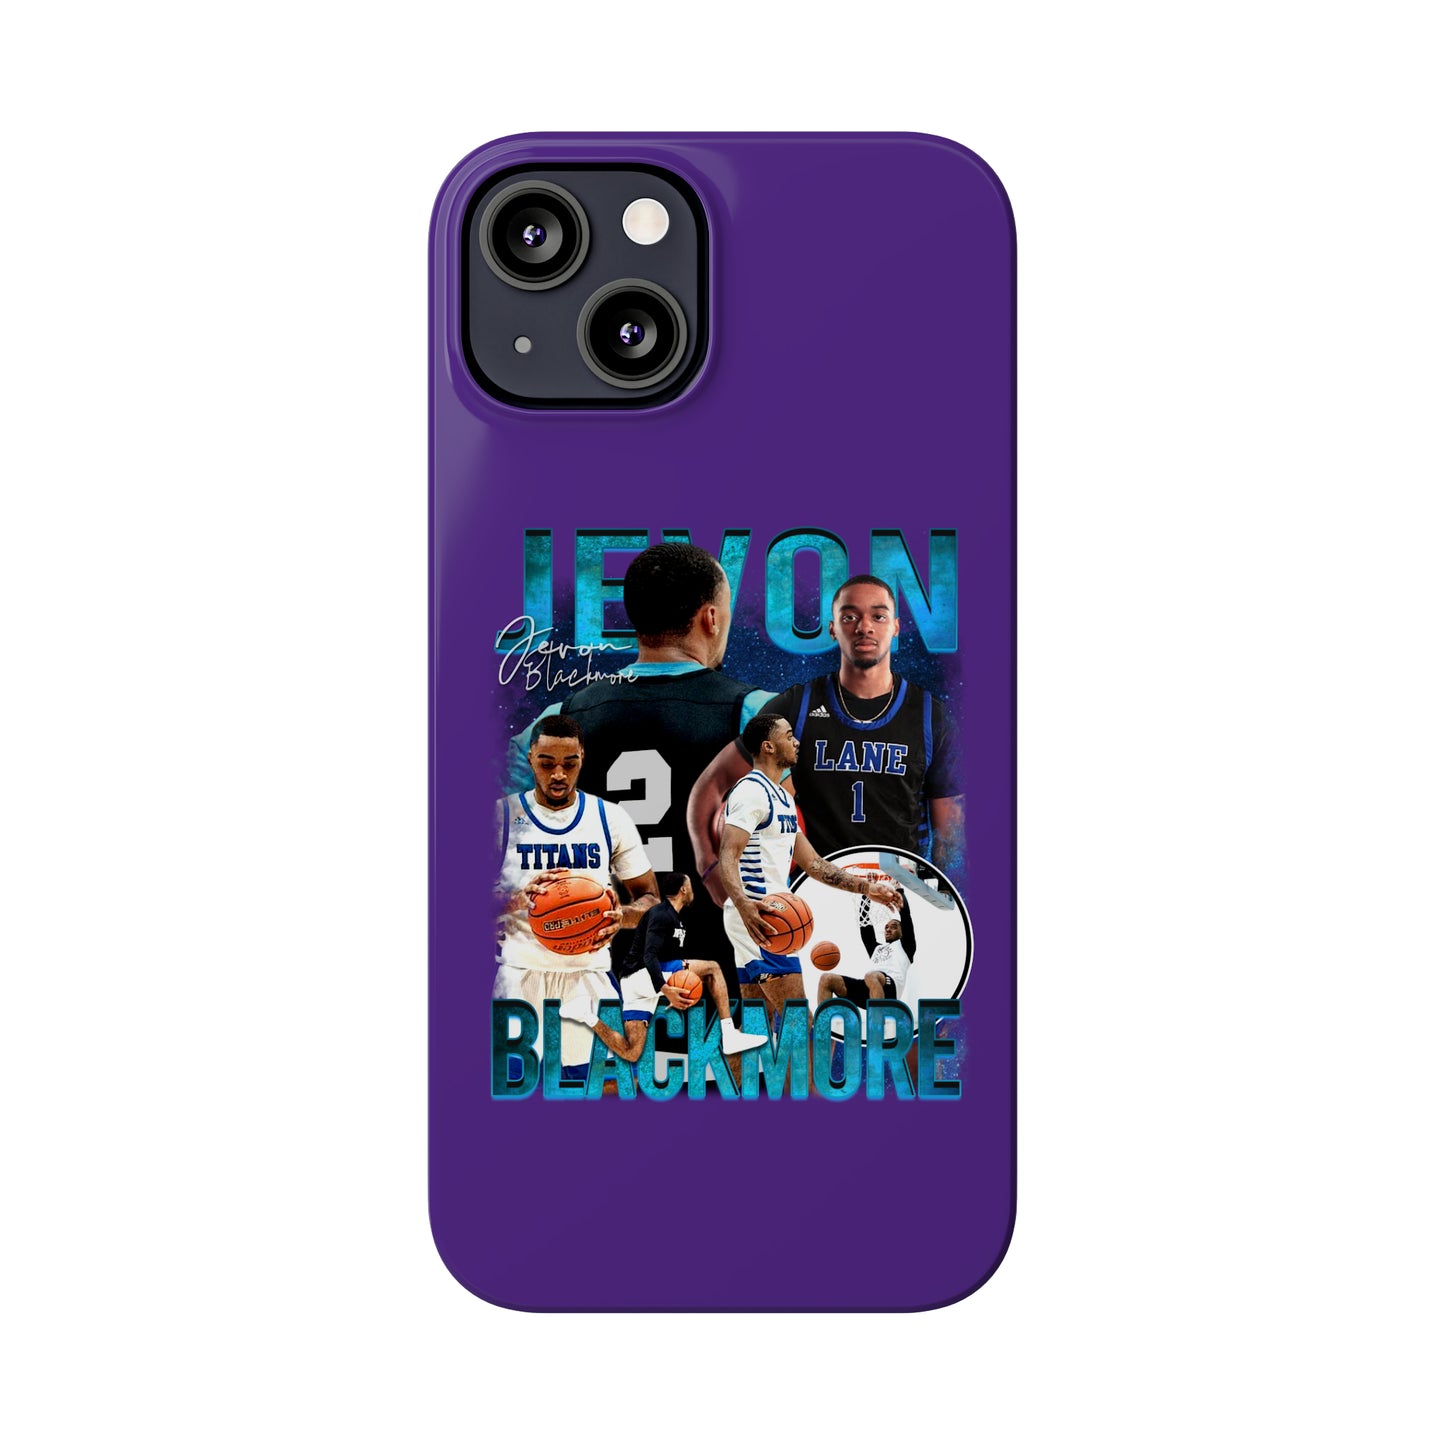 Jevon Blackmore Slim Phone Cases